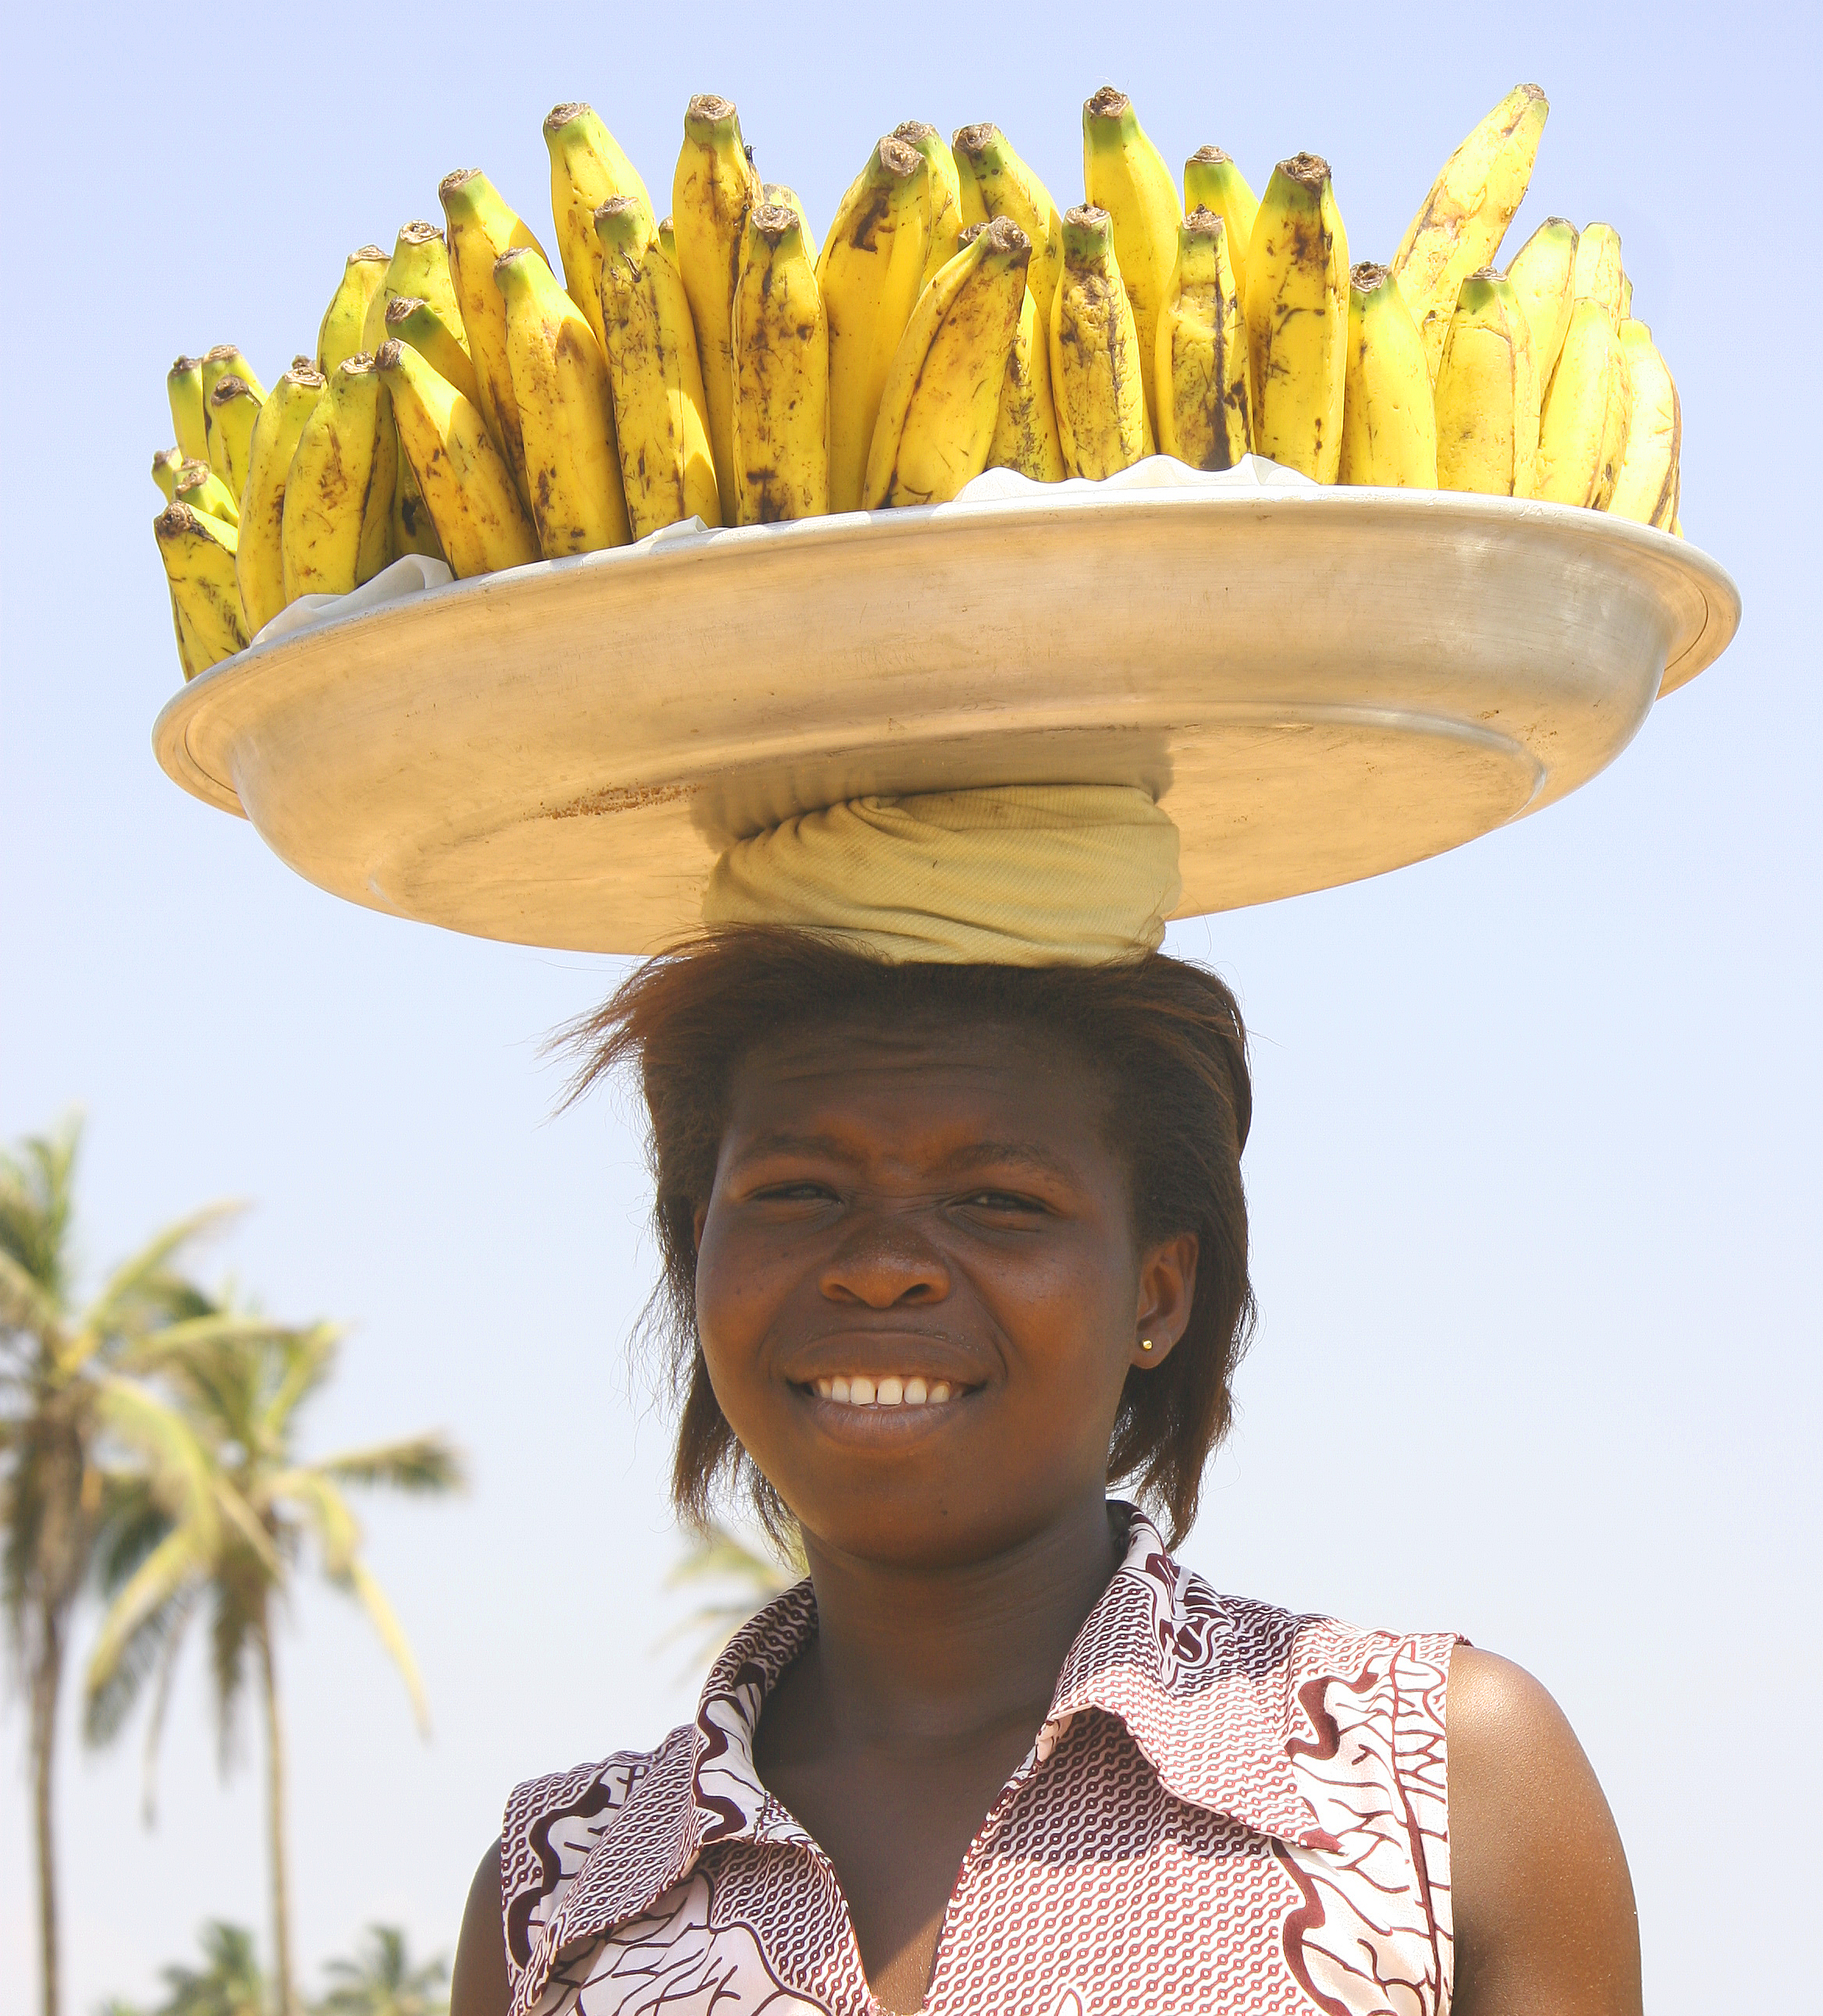 Ghana woman with bananas